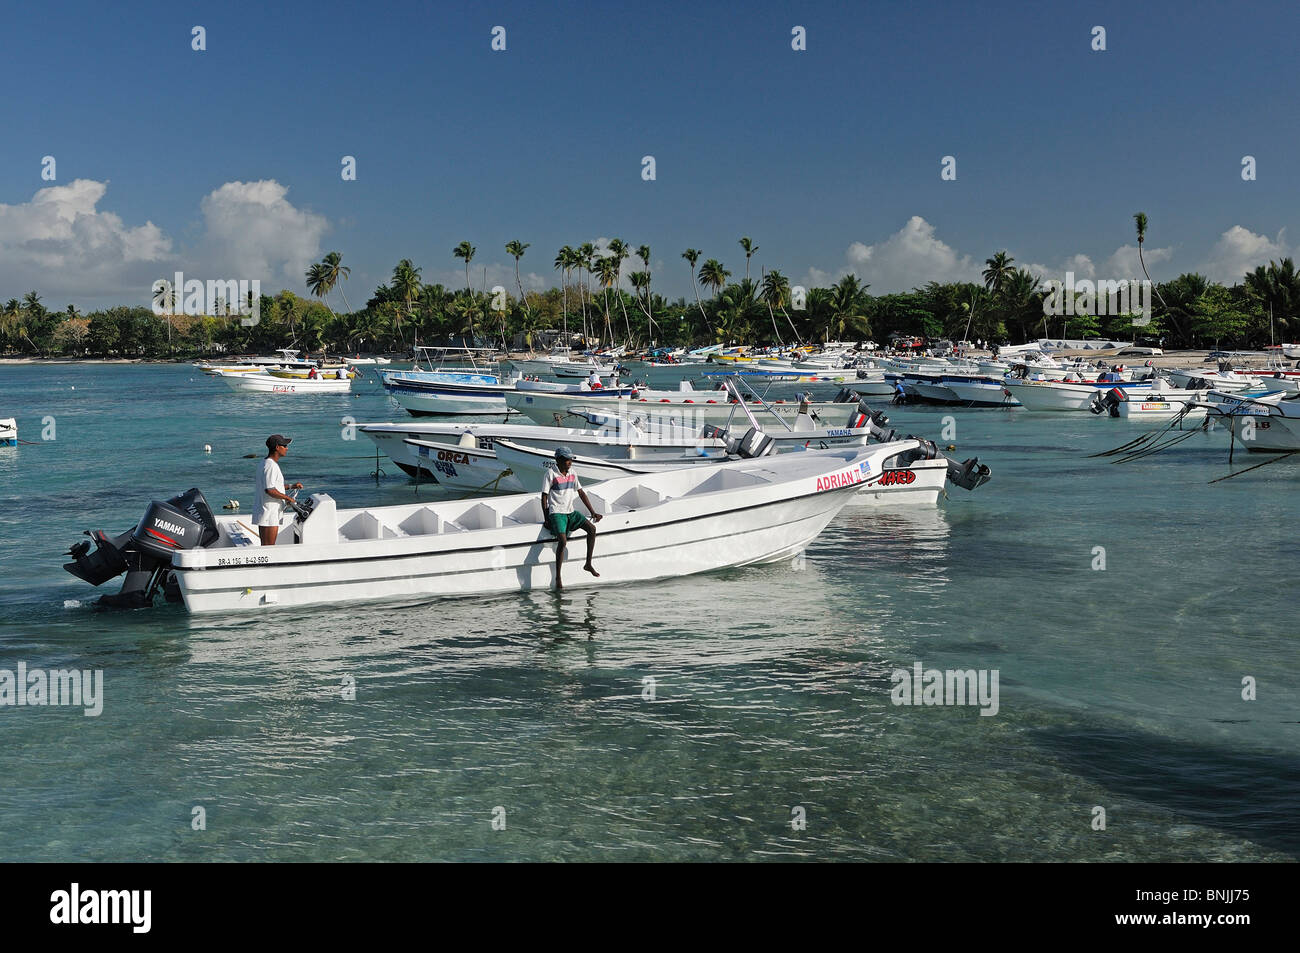 Marina Bayahibe La Romana Dominican Republic boats harbour travel tourism holiday Caribbean Stock Photo